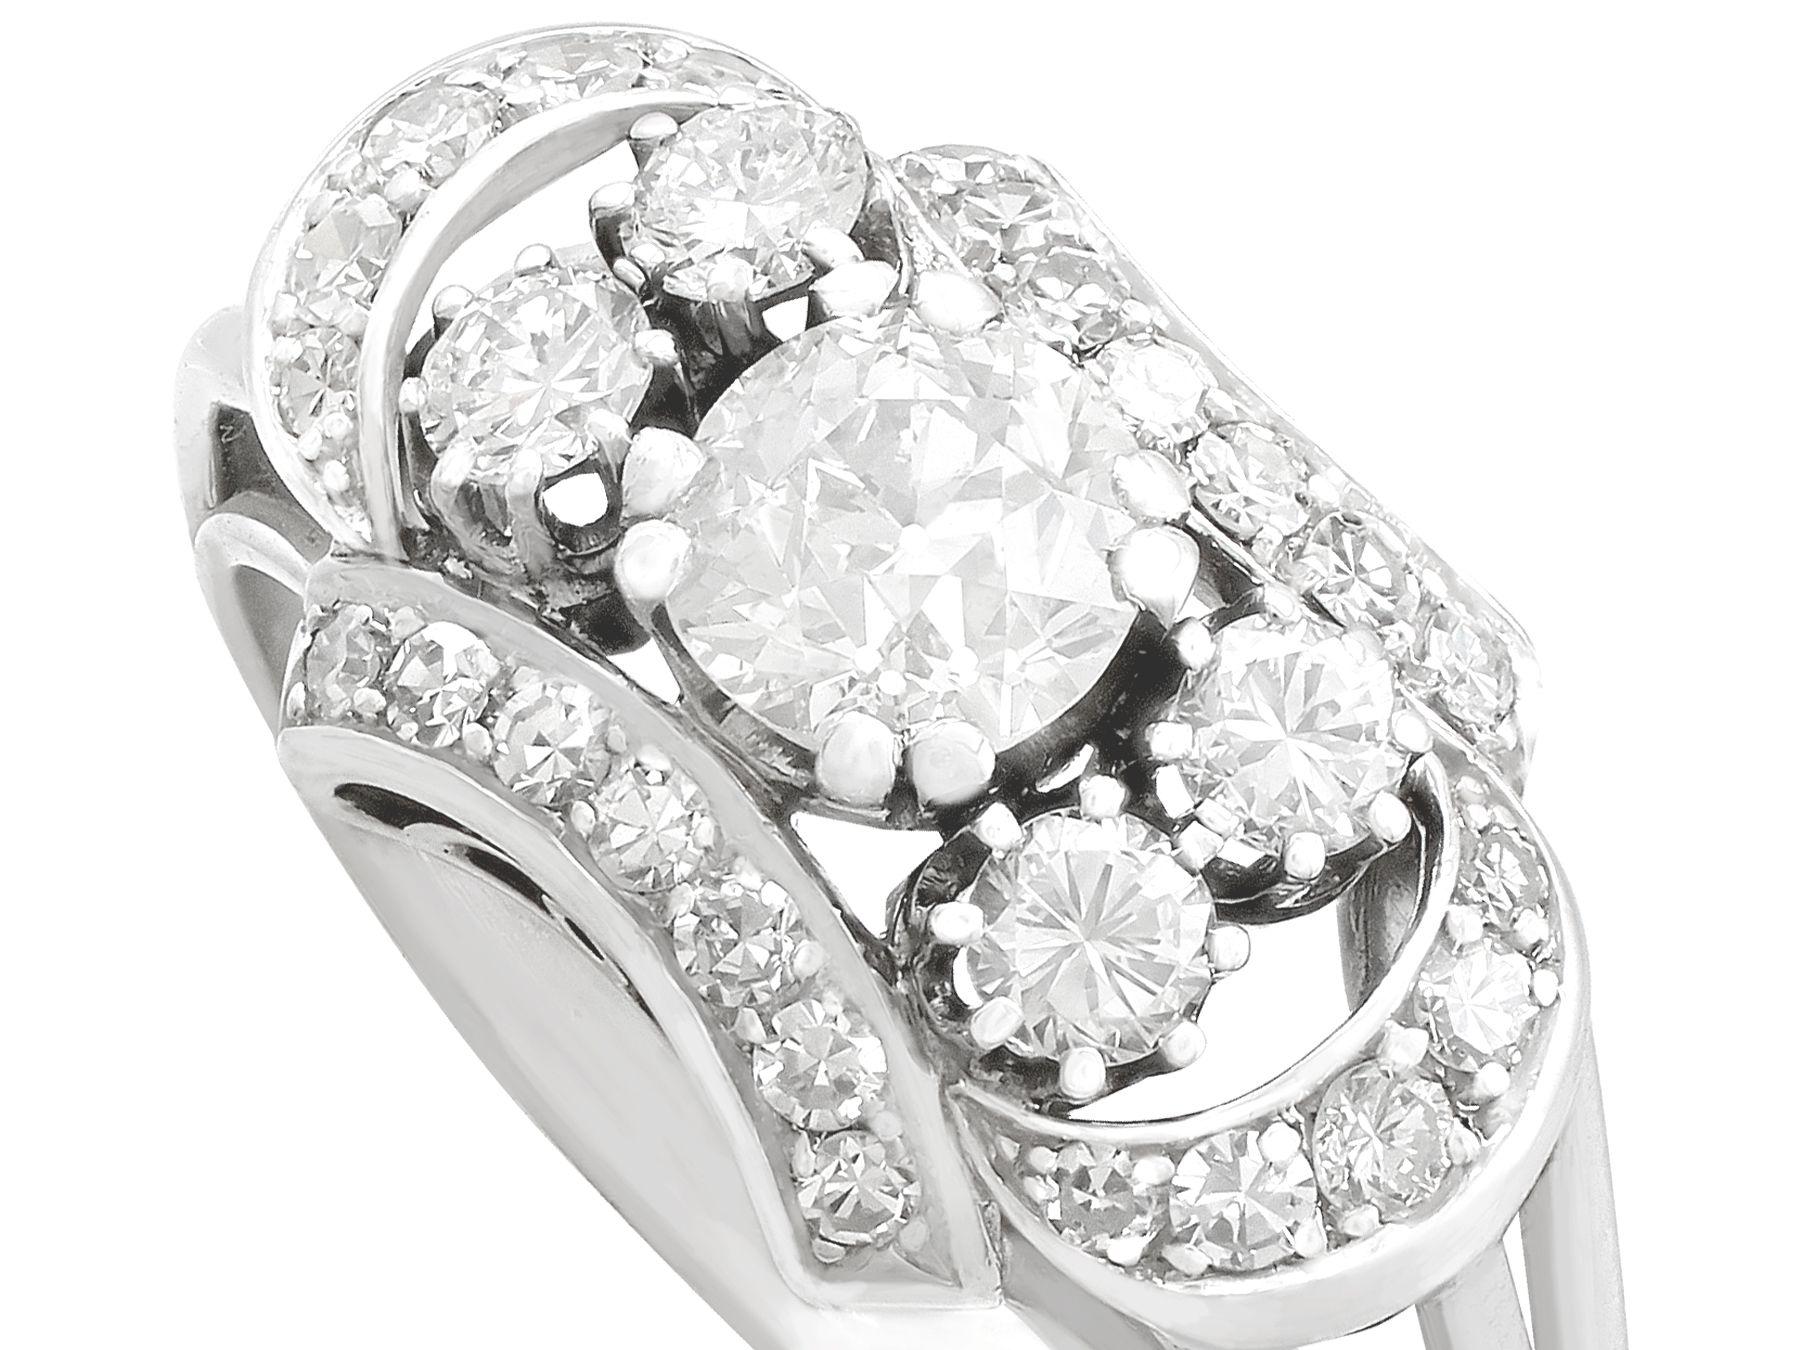 1950s princess ring